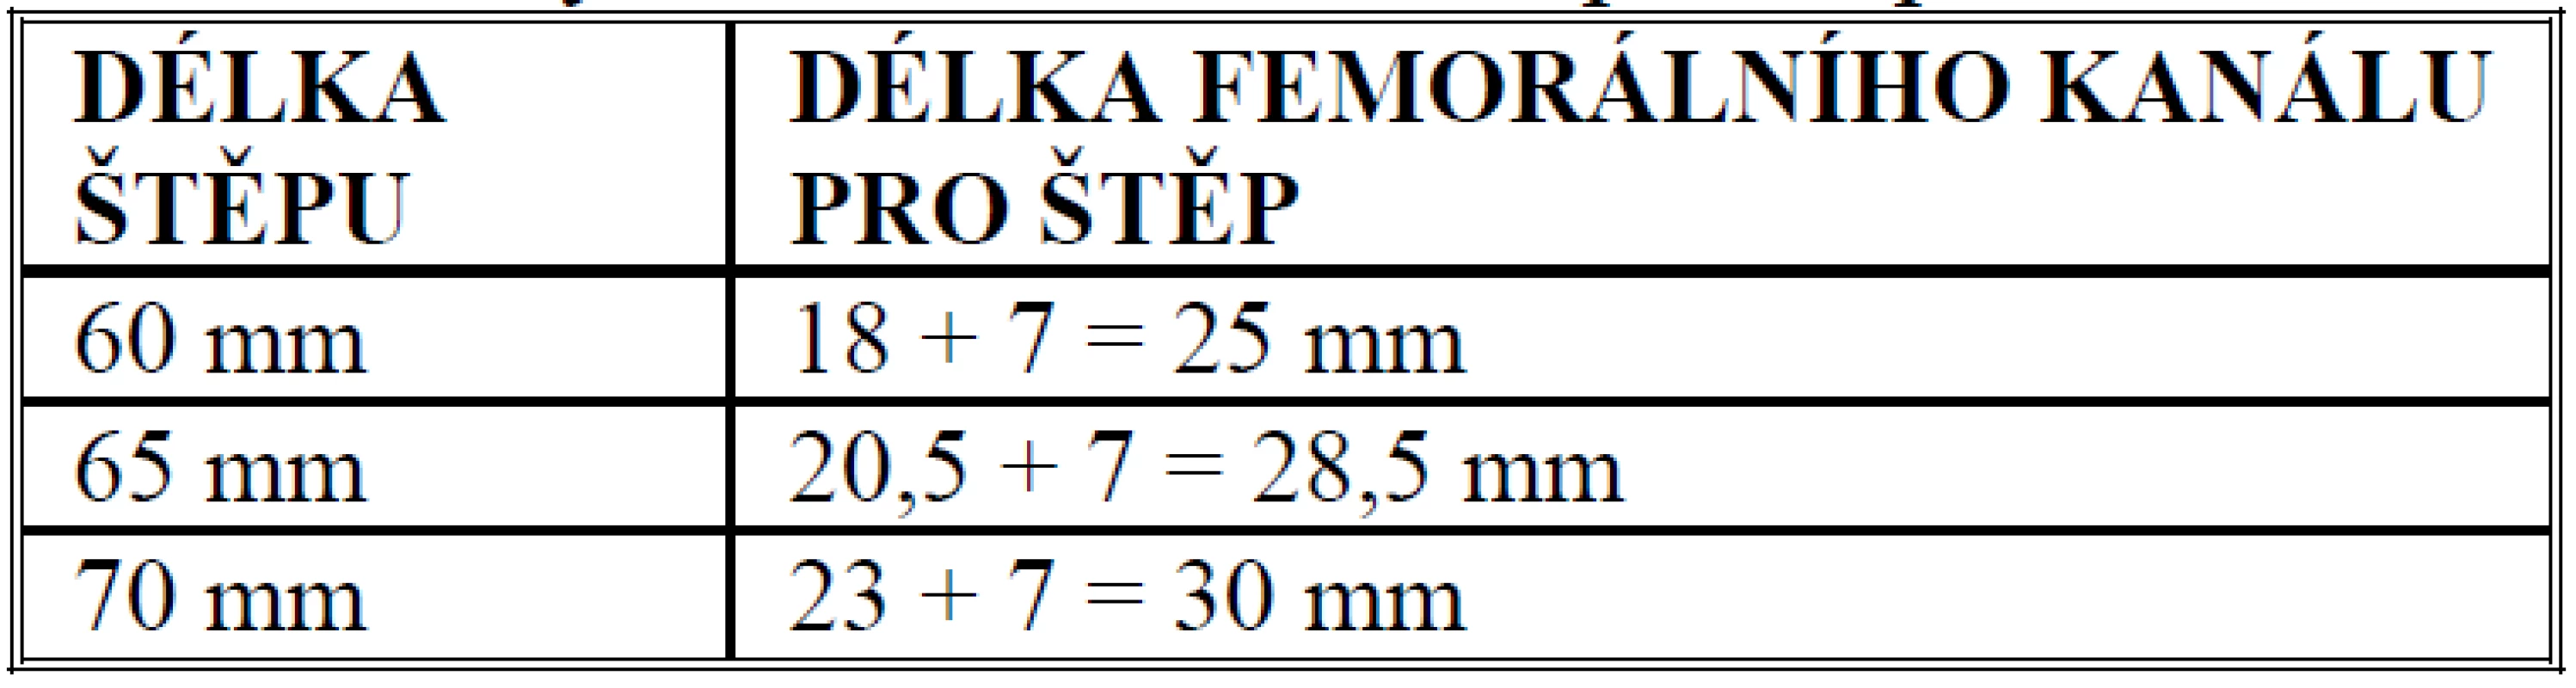 Určení délky femorálního kanálu pro štěp